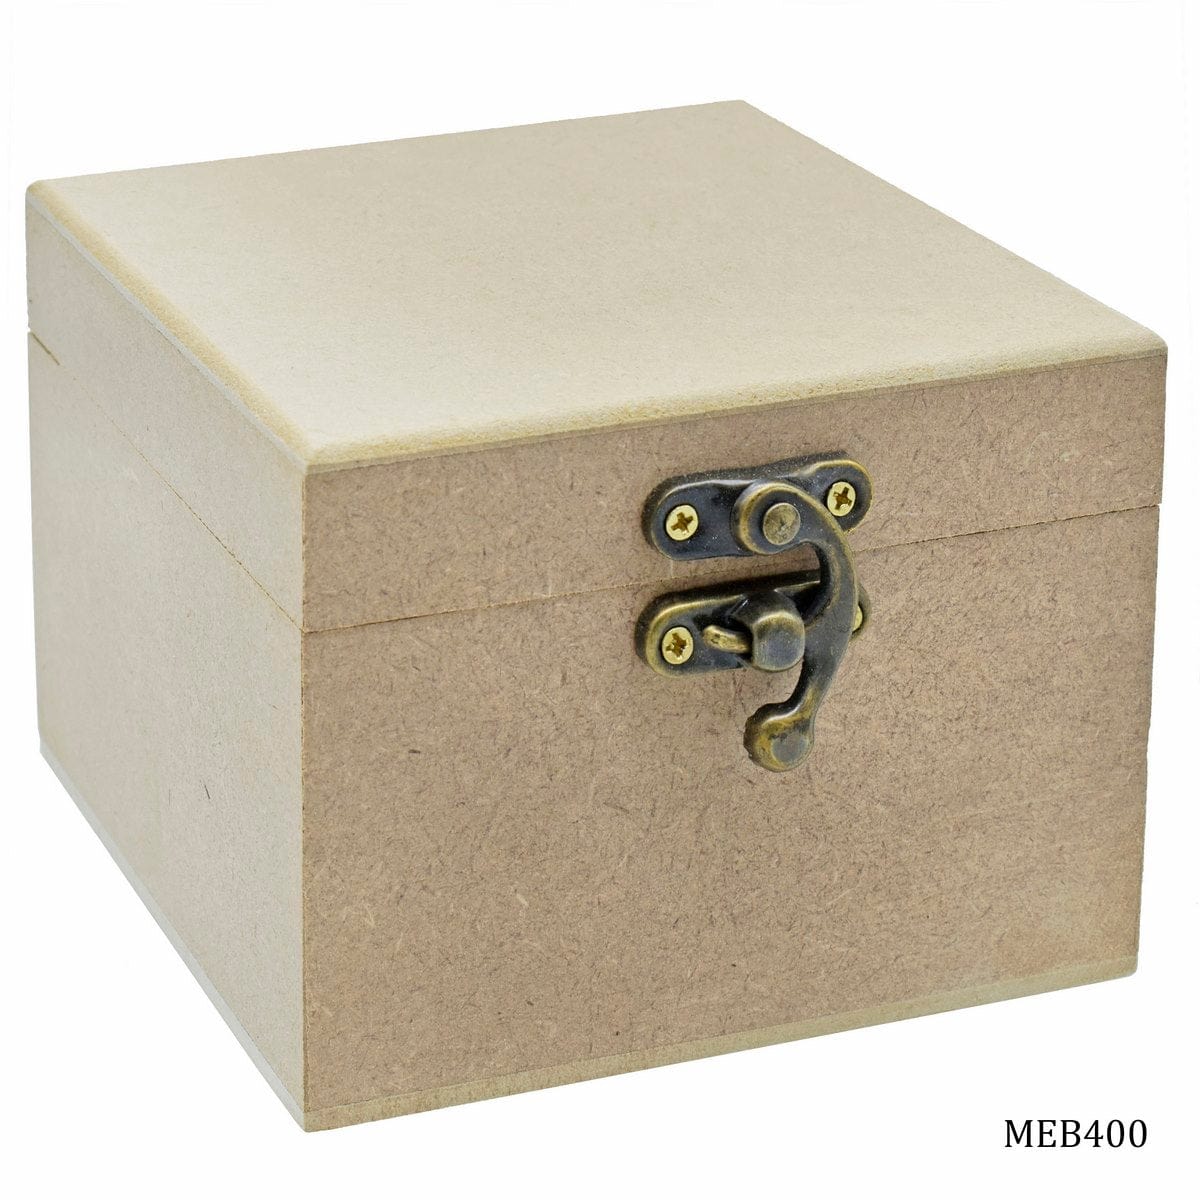 jags-mumbai MDF MDF Empty Box 4 X 4 X 3 inch MEB400